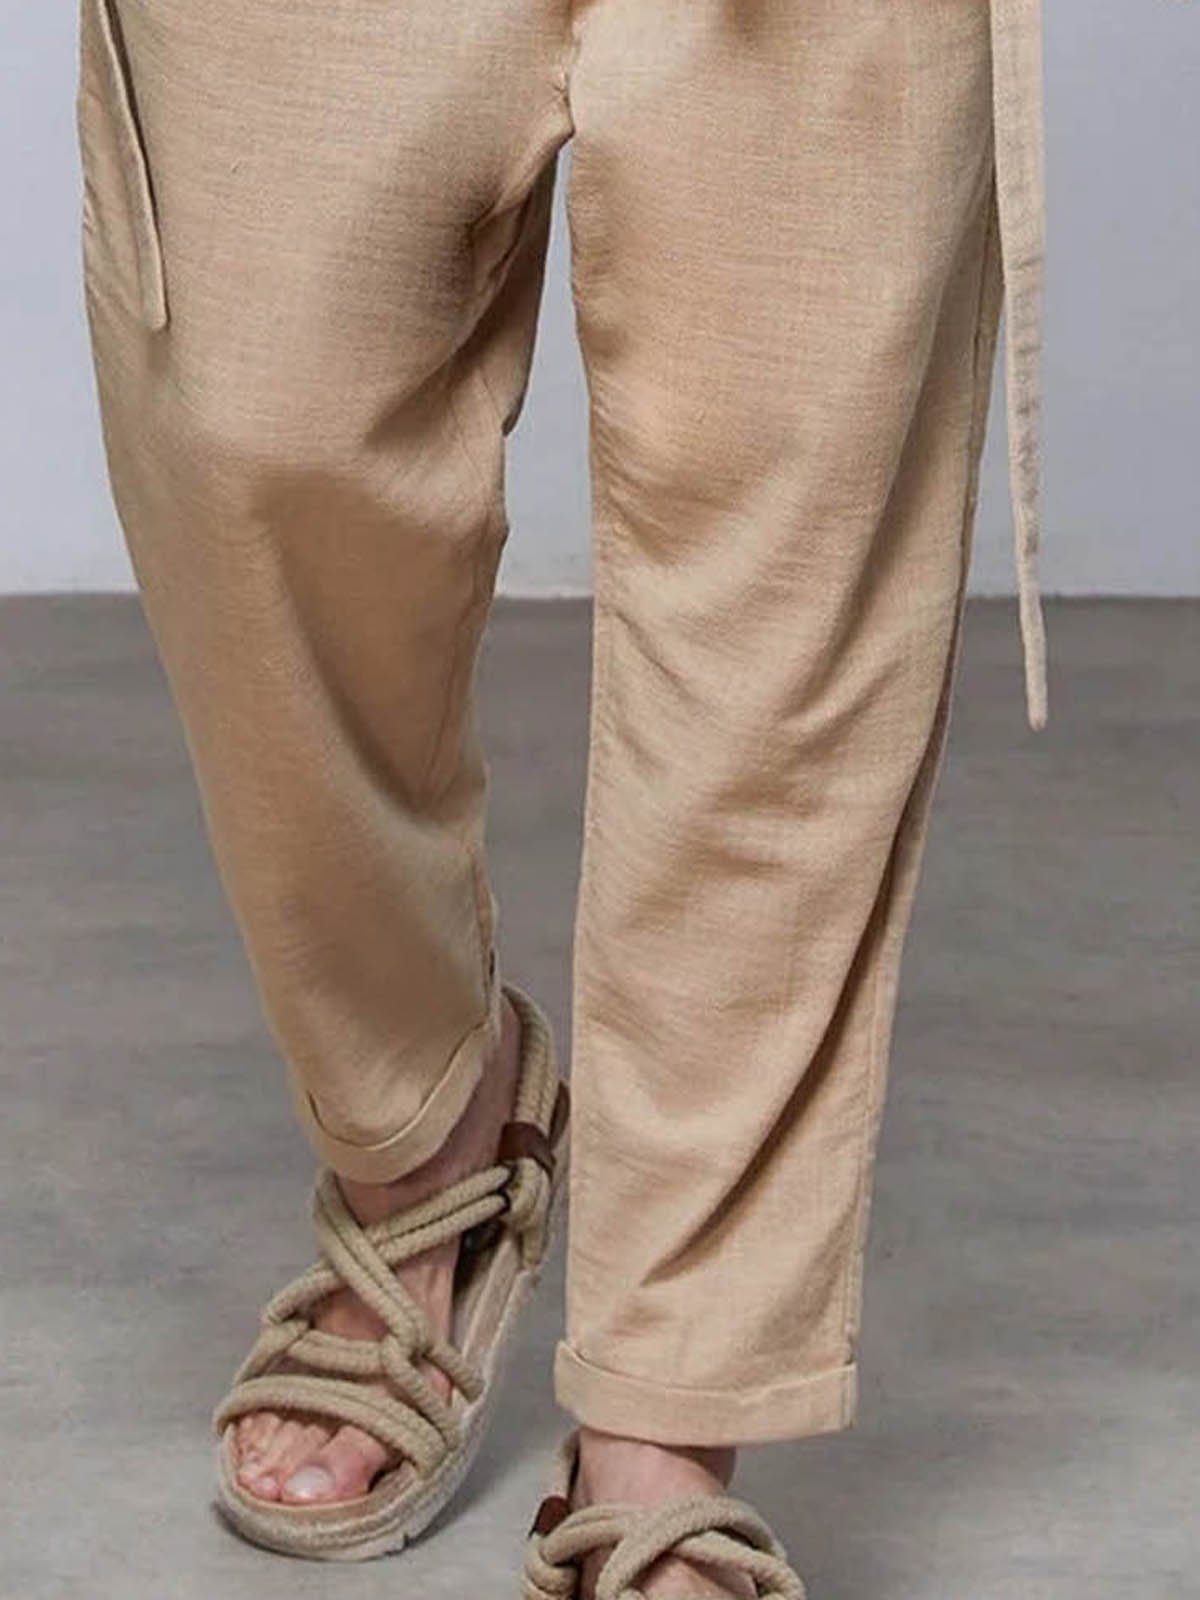 Plain Cotton-Blend Linen Casual Pants